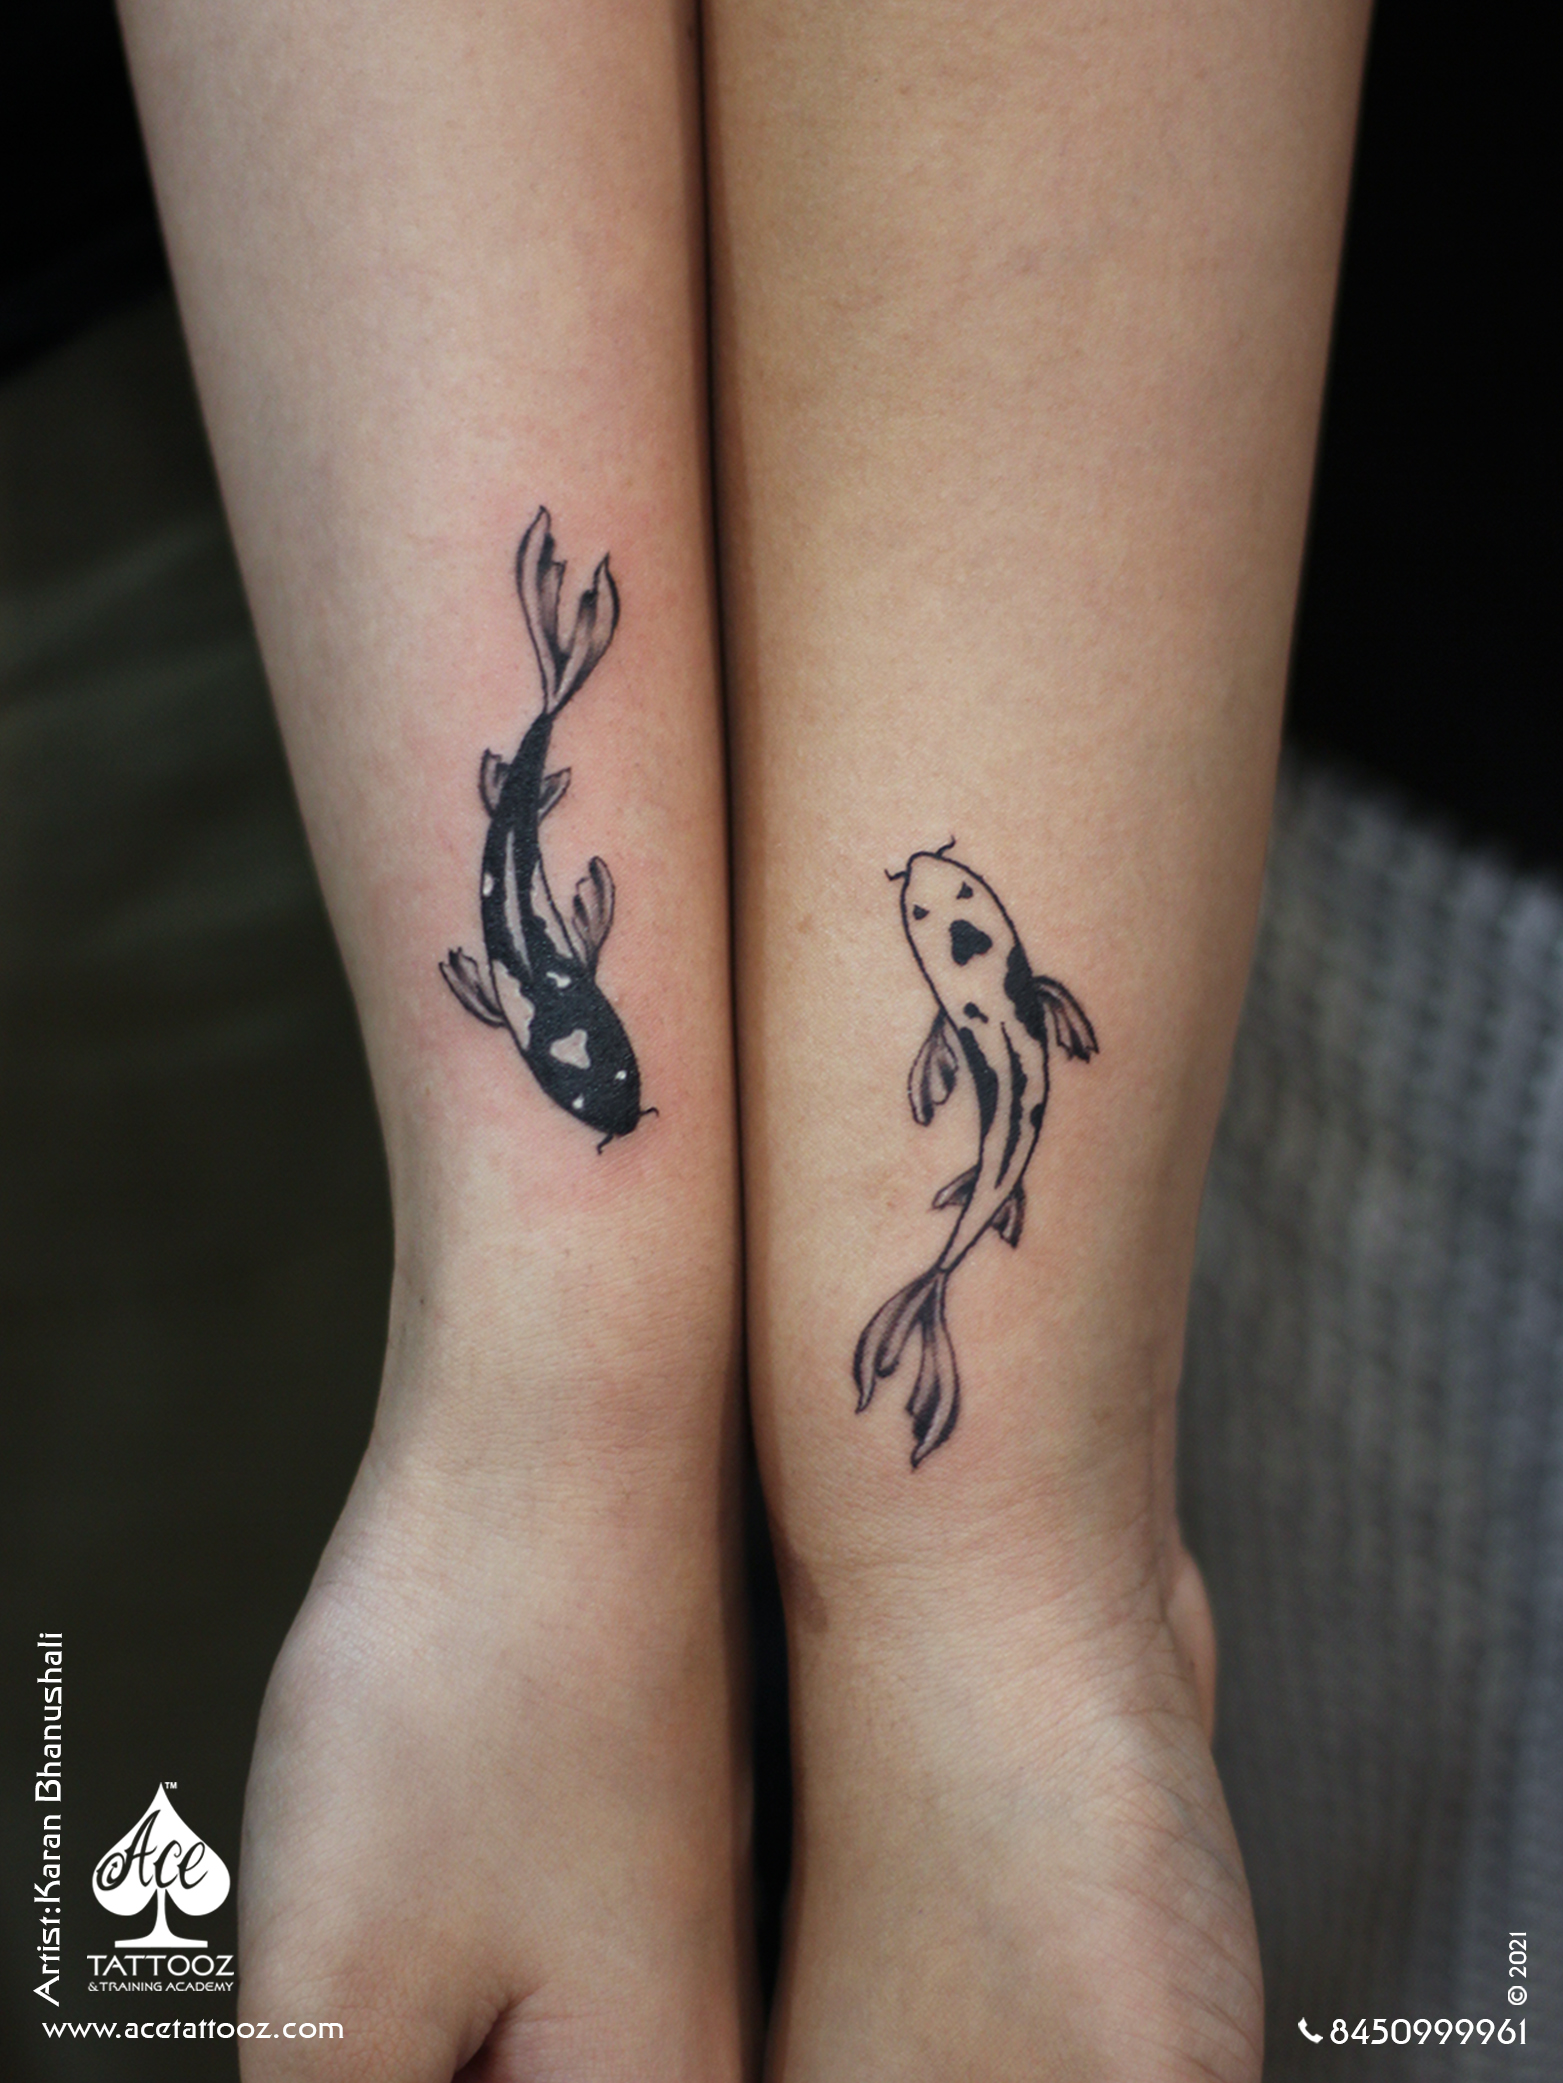 Koi Fish Tattoos: 45+ Gorgeous Ideas & What They Mean